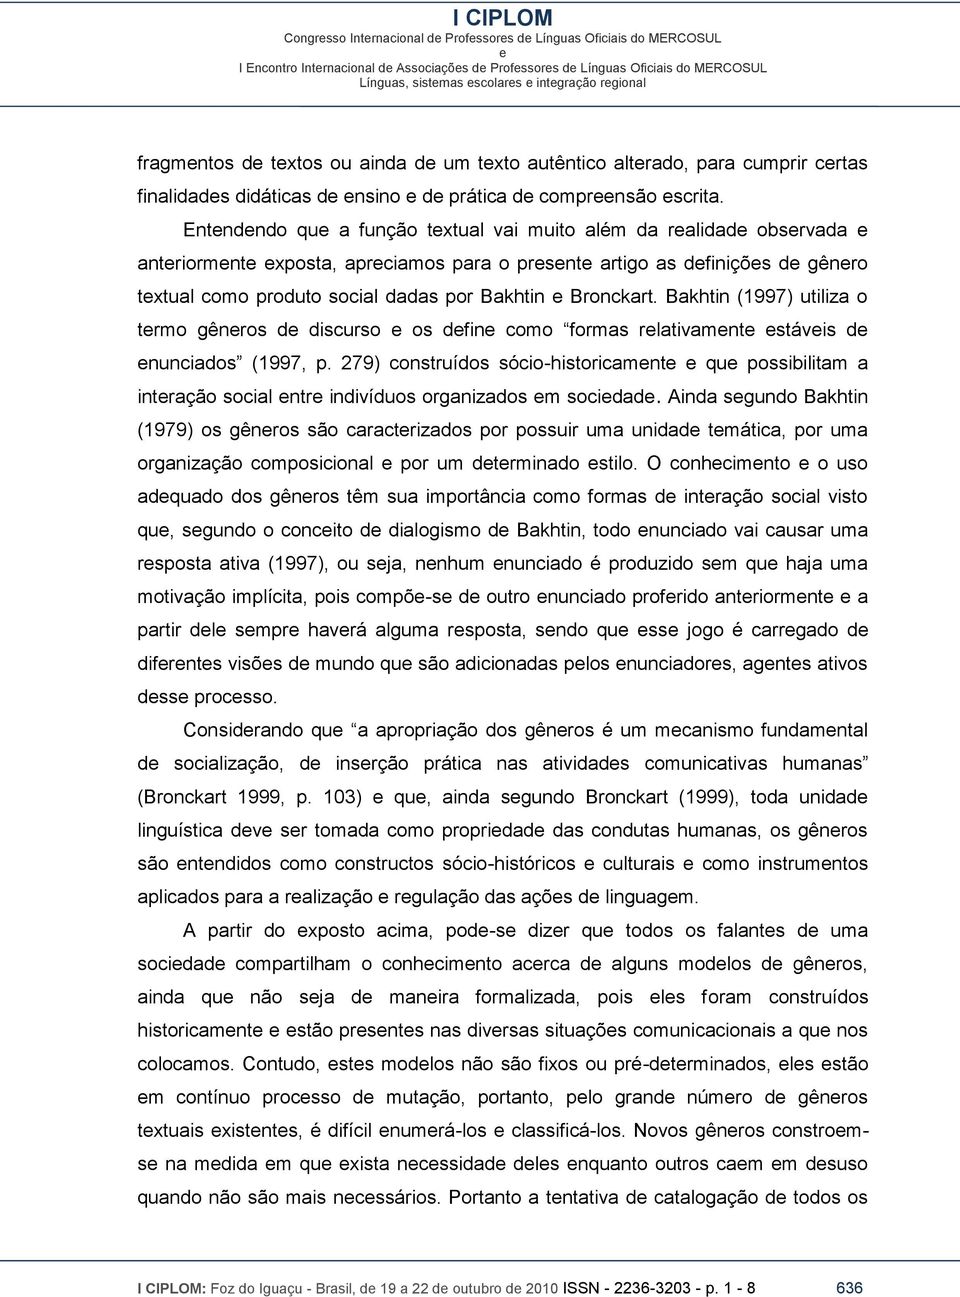 Bakhtin (1997) utiliza o trmo gênros d discurso os dfin como formas rlativamnt stávis d nunciados (1997, p.